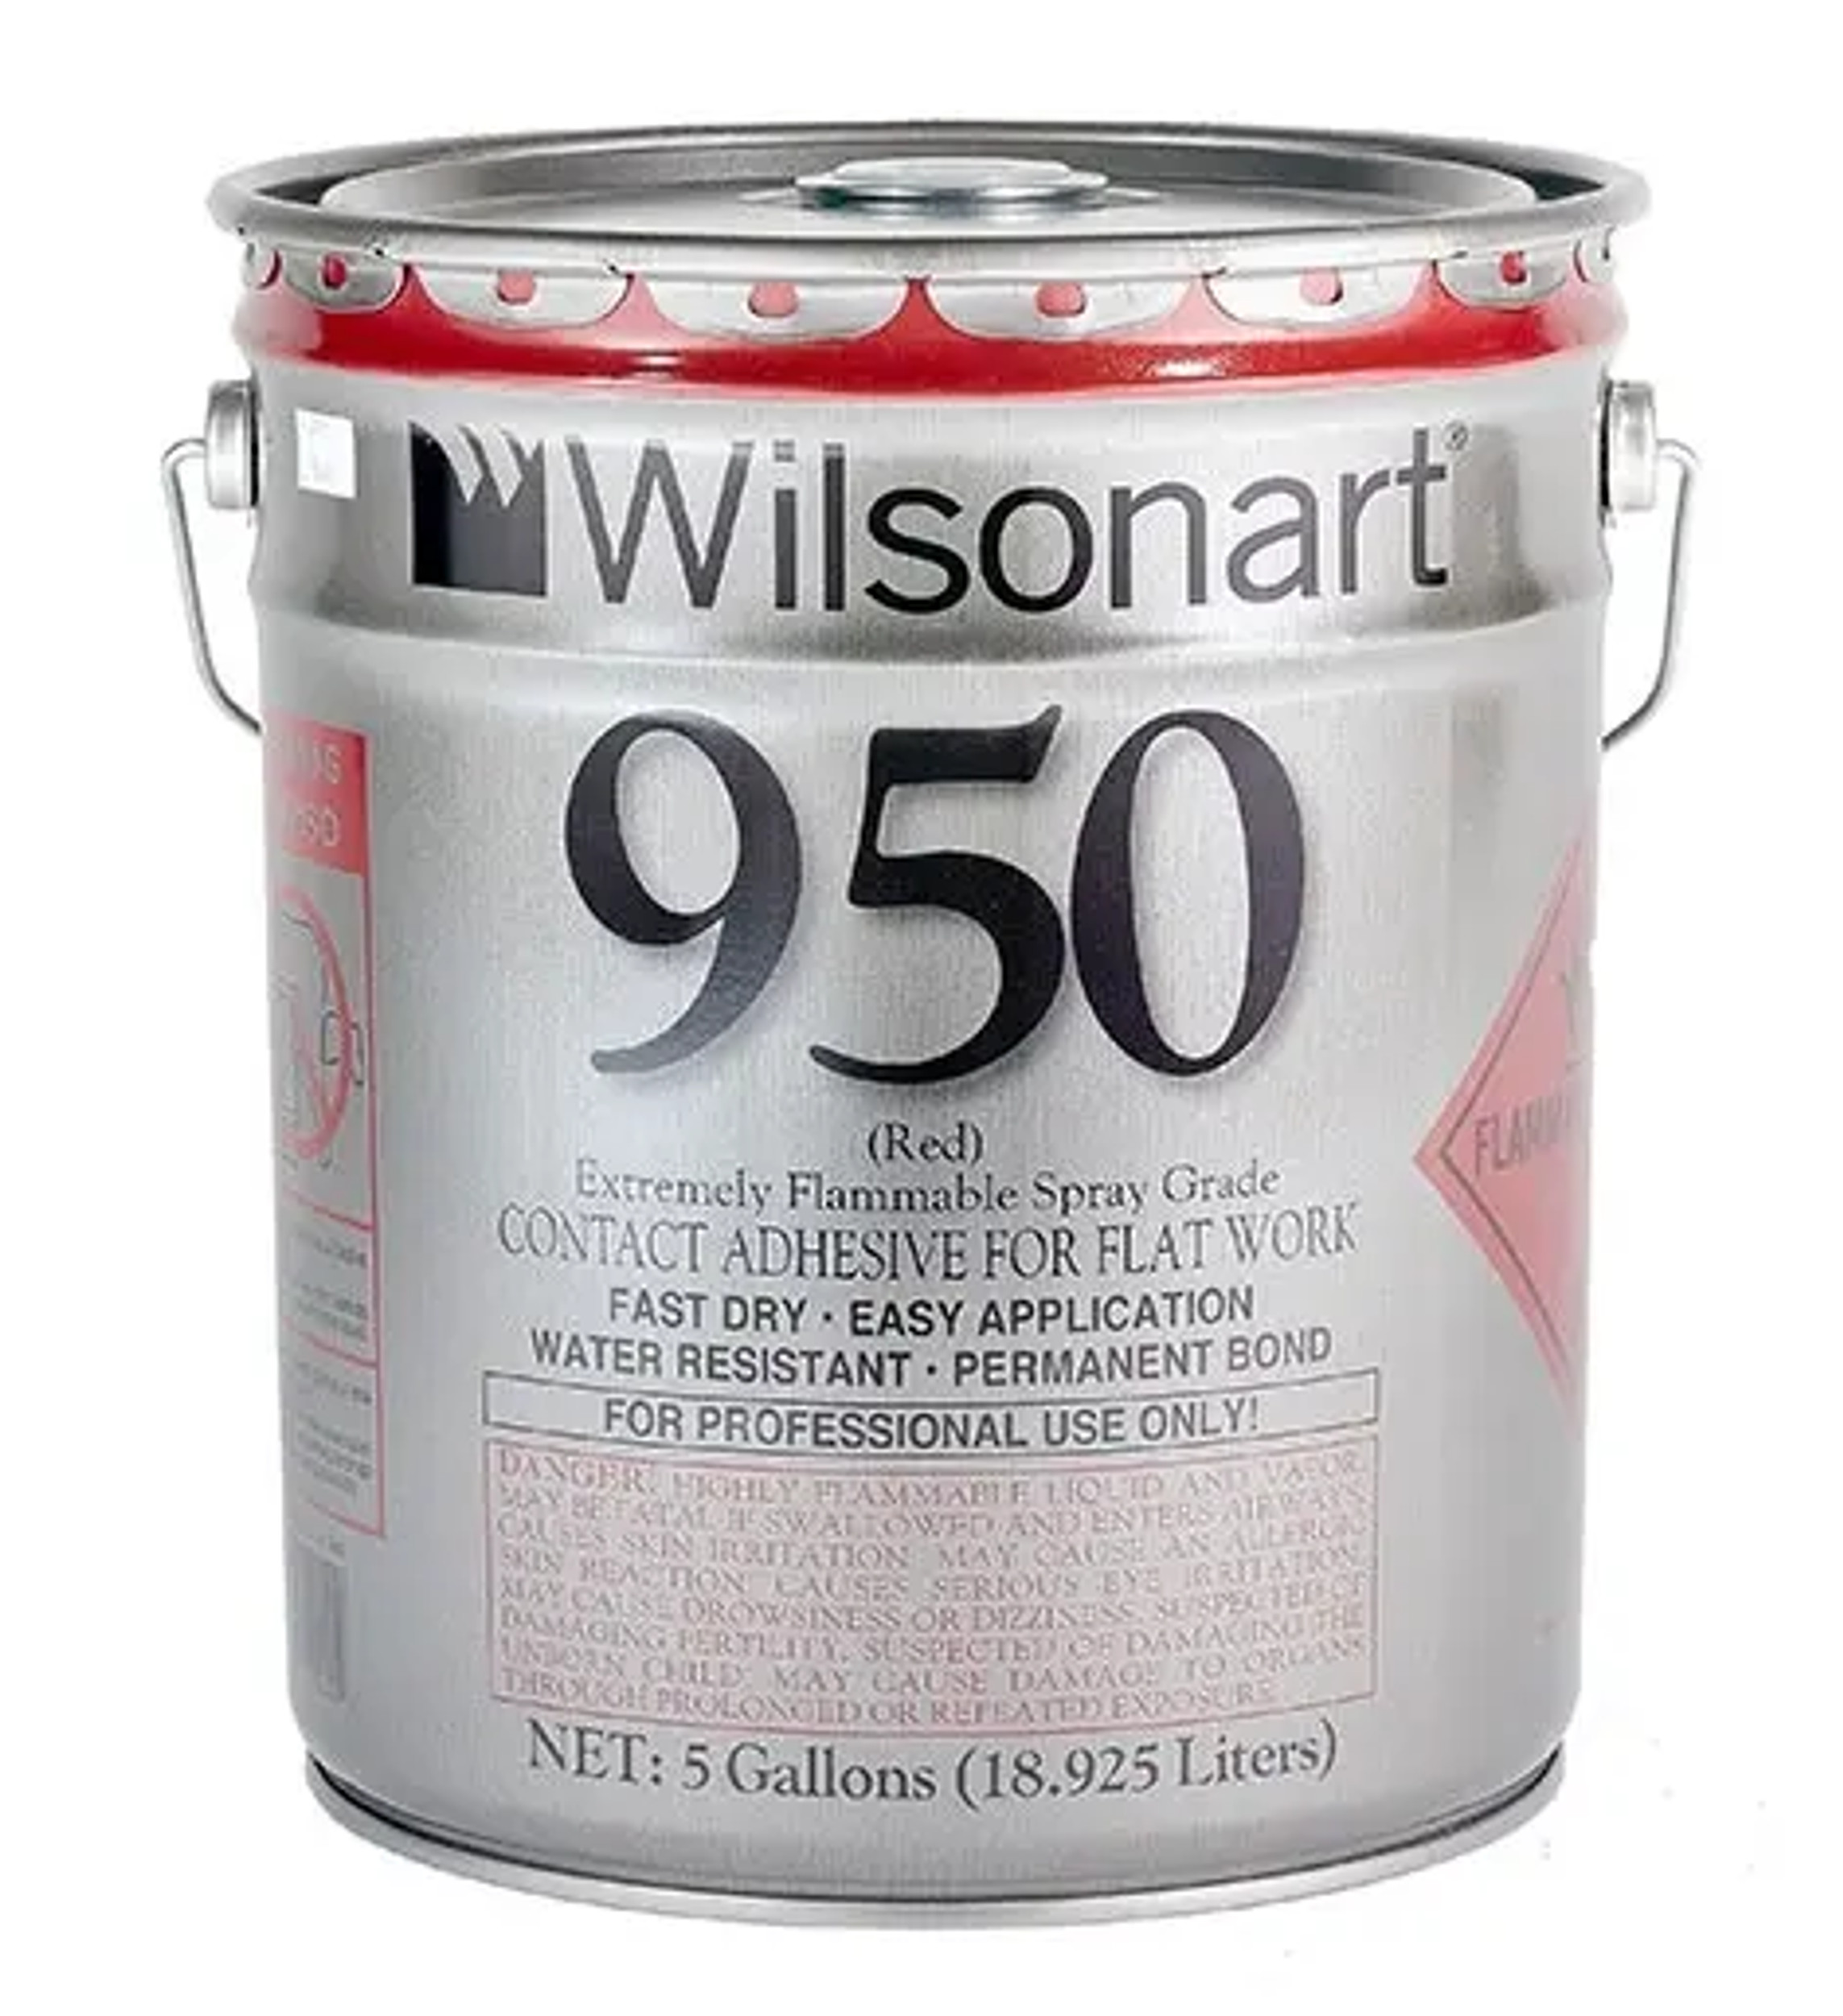 WILSONART® 950/951 FLATWORK SPRAY GRADE CONTACT ADHESIVE
WA-950/951